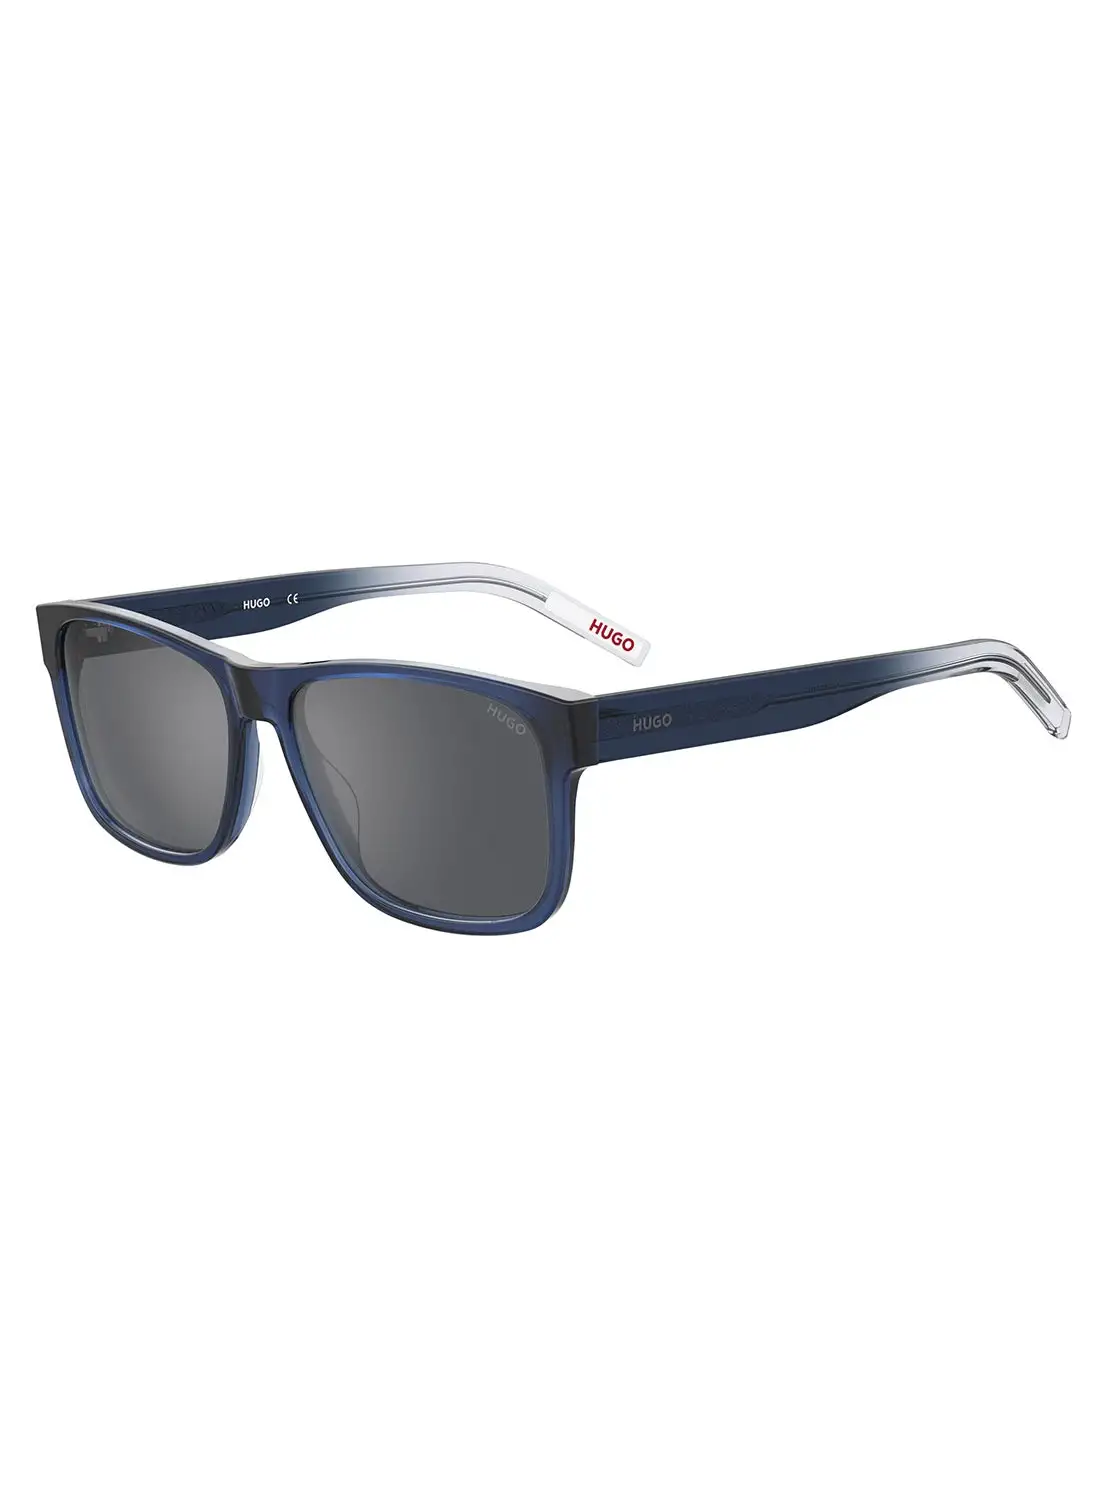 HUGO Men's UV Protection Rectangular Sunglasses - Hg 1260/S Blue Millimeter - Lens Size: 57 Mm